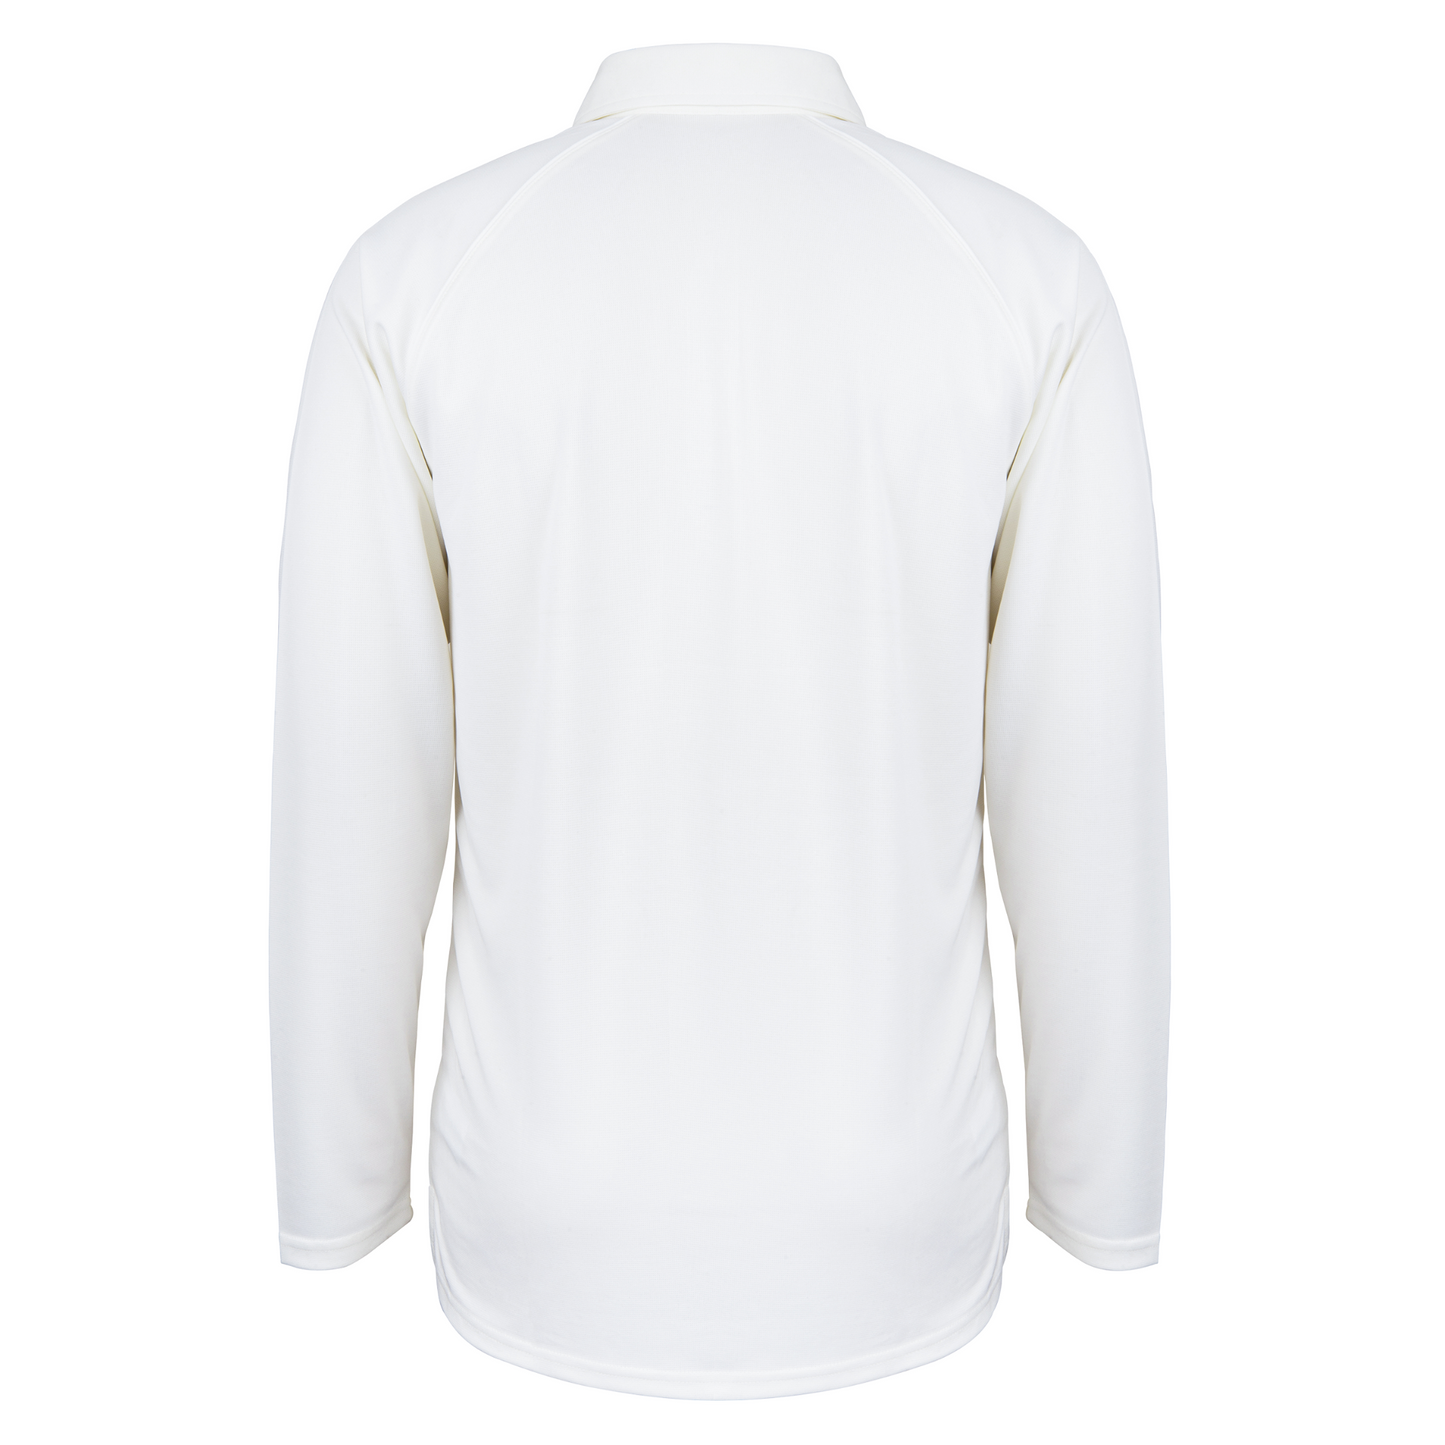 Gray Nicolls Matrix V2 Long Sleeve Shirt